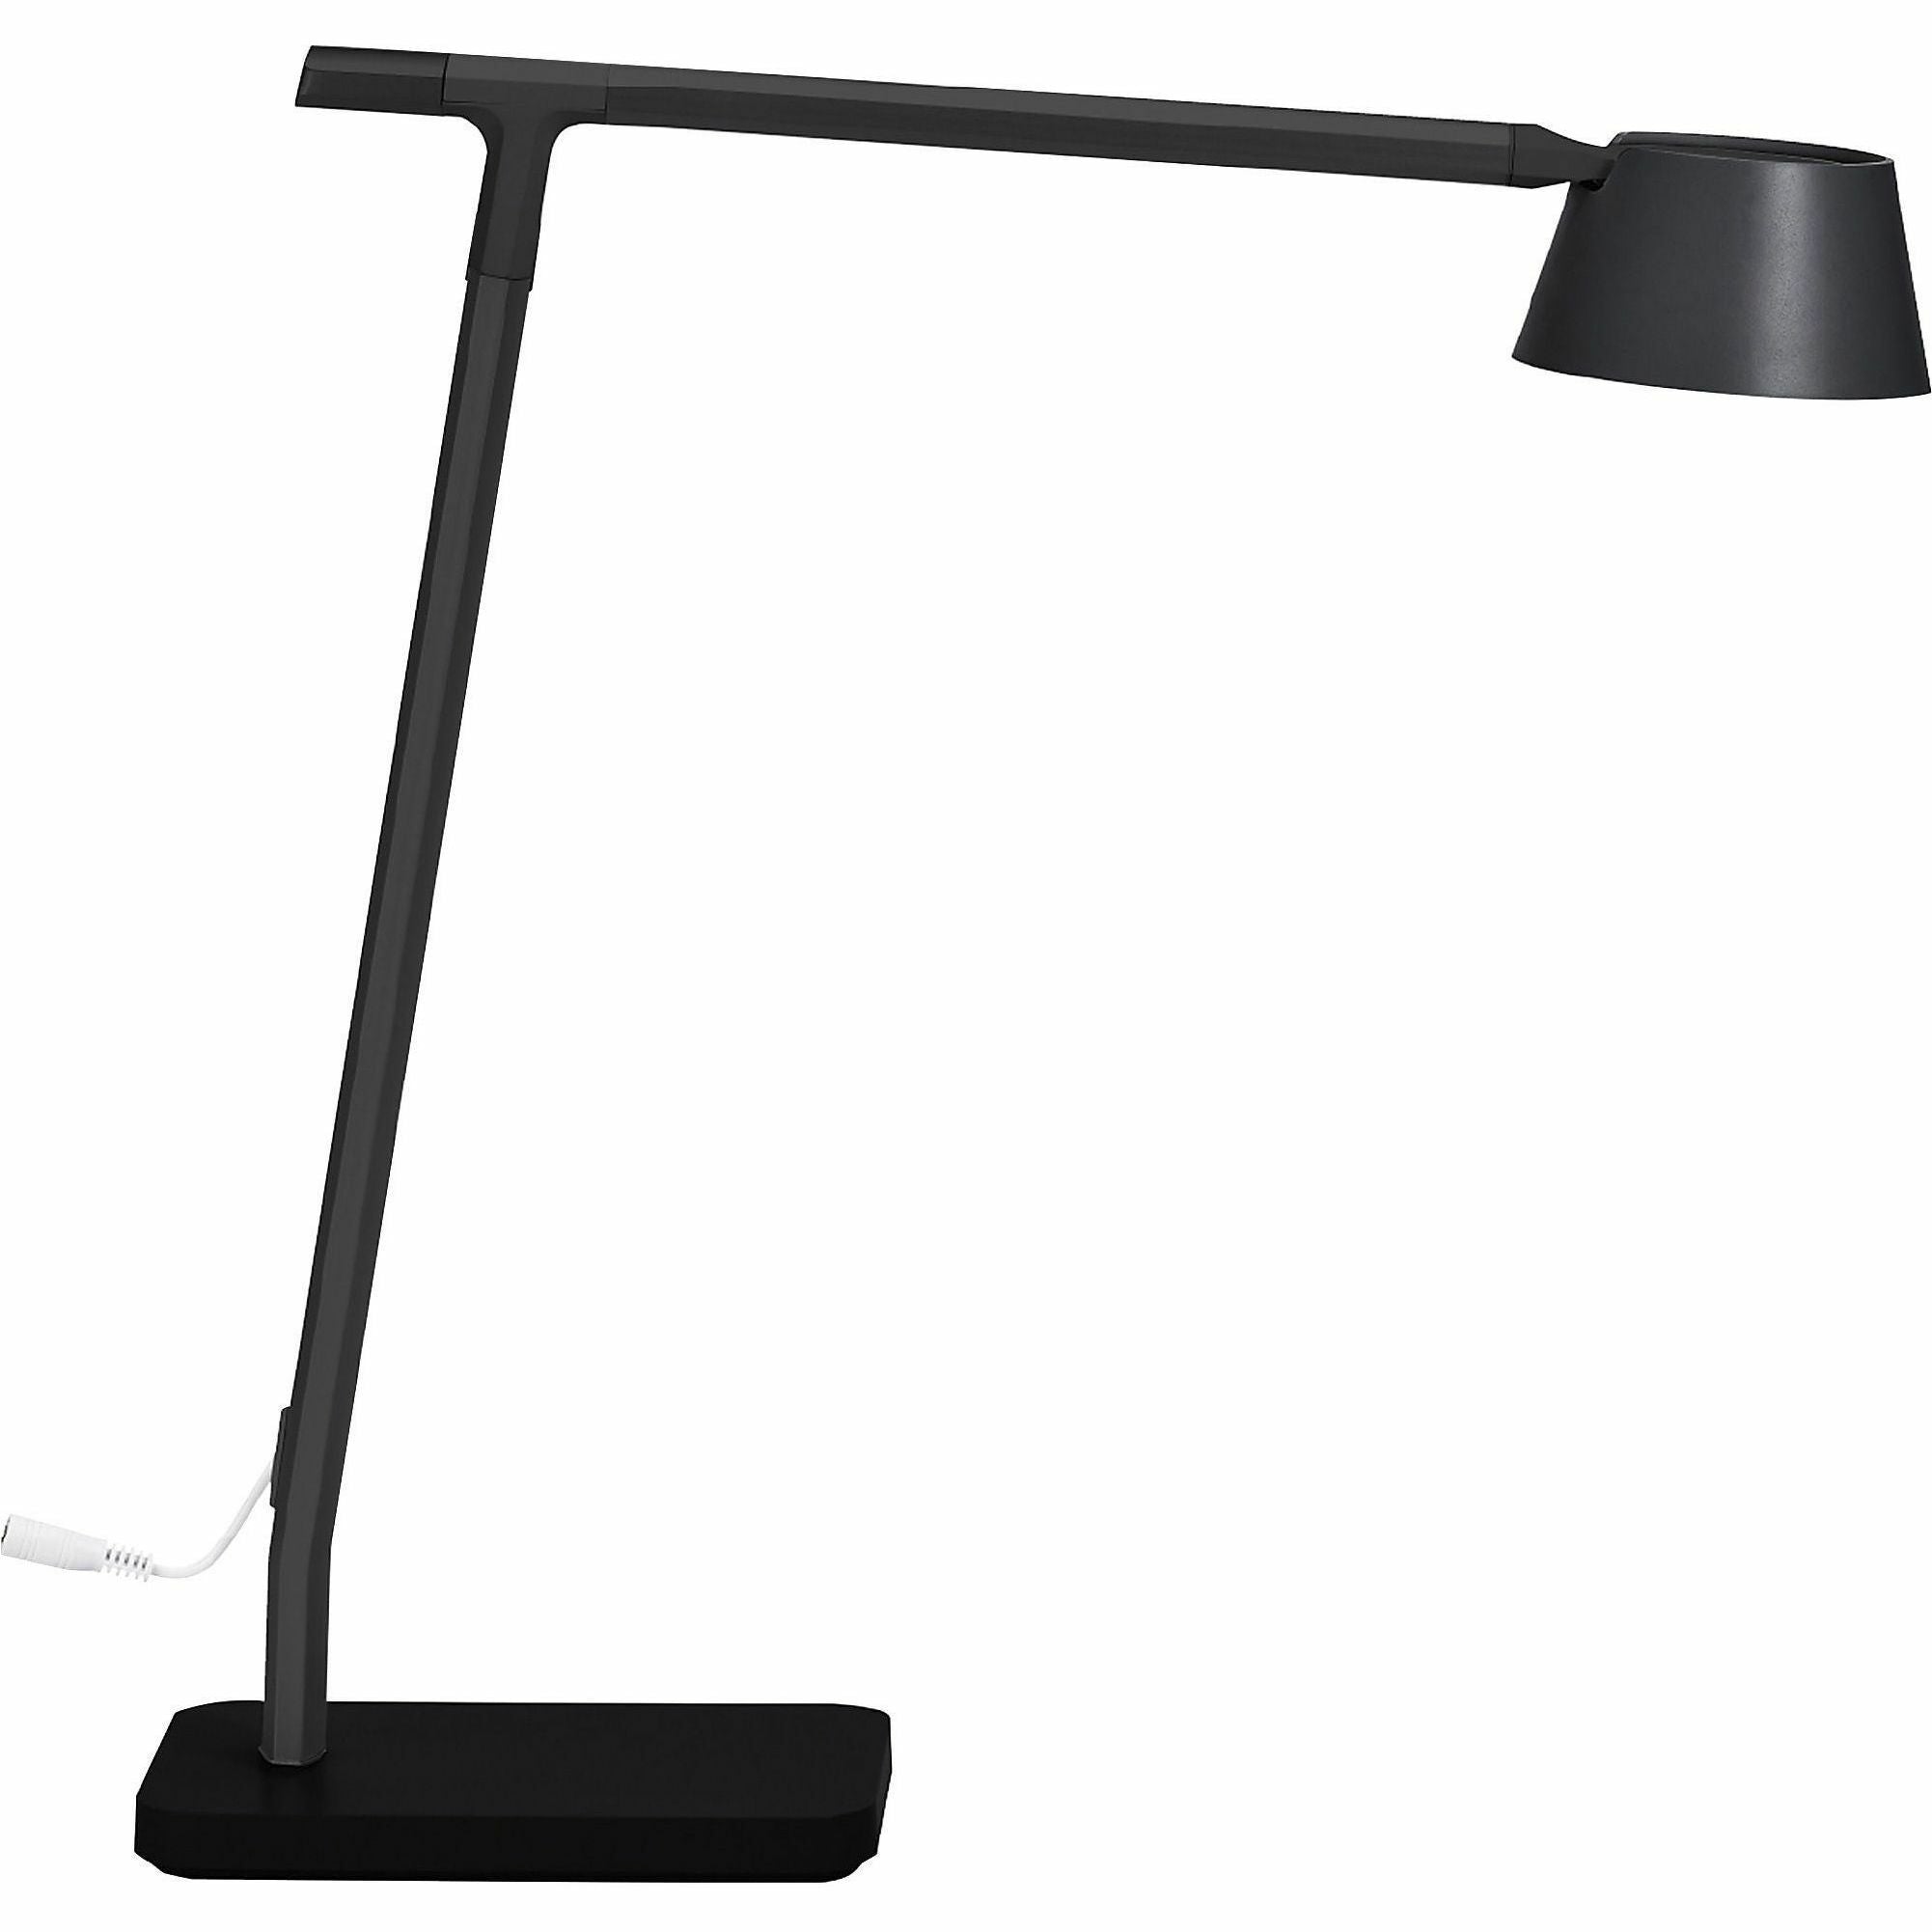 bostitch-verve-adjustable-led-desk-lamp-led-bulb-adjustable-dimmable-adjustable-brightness-clock-durable-usb-charging-swivel-base-color-changing-mode-aluminum-desk-mountable-black-for-desk-alexa-supported_bos2200usbsmbk - 5